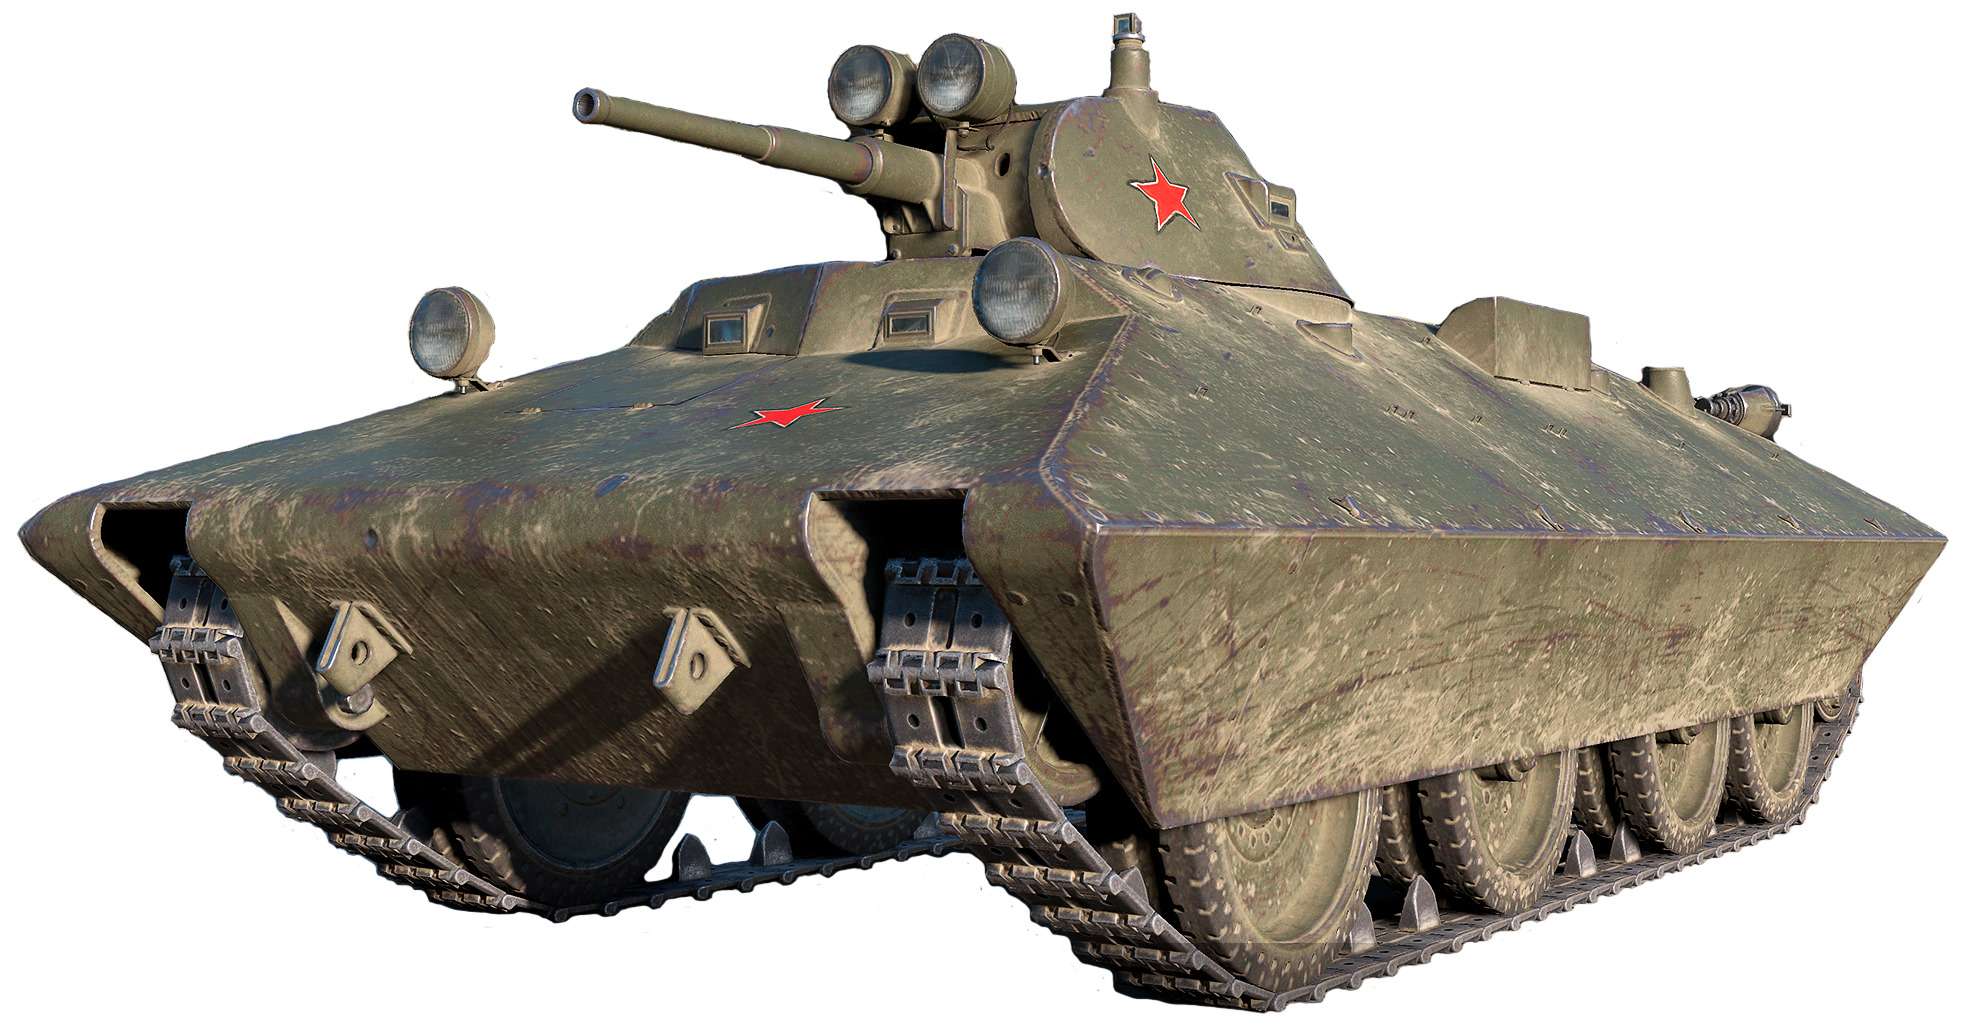 БТ-СВ-2 (Быстроходный Танк «Сталин-Ворошилов») — советский колёсно-гусеничный танк